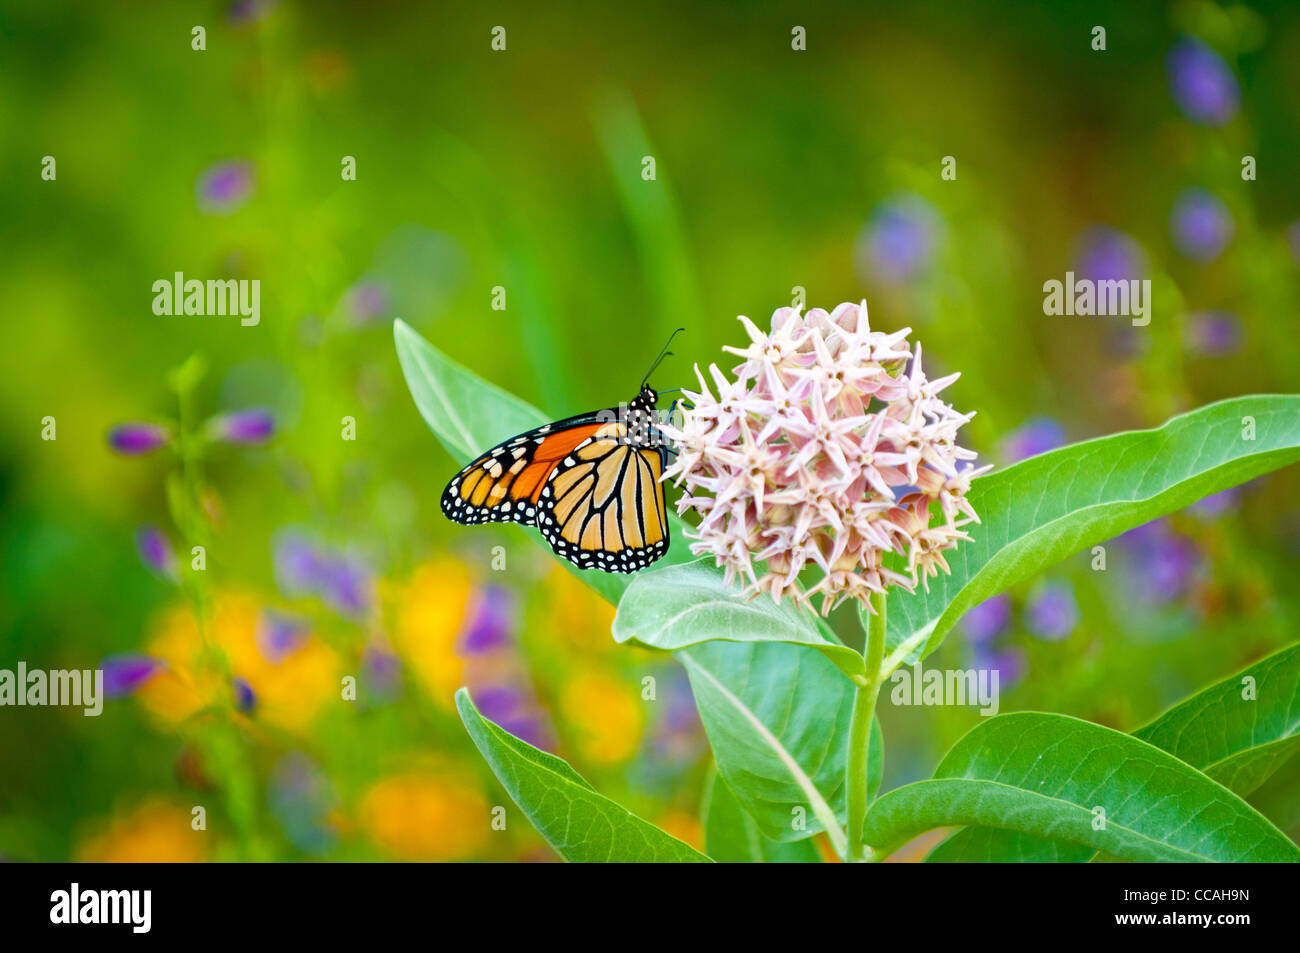 Mariposa Monarca sobre Asclepias florecen en el hábitat silvestre Foto de stock